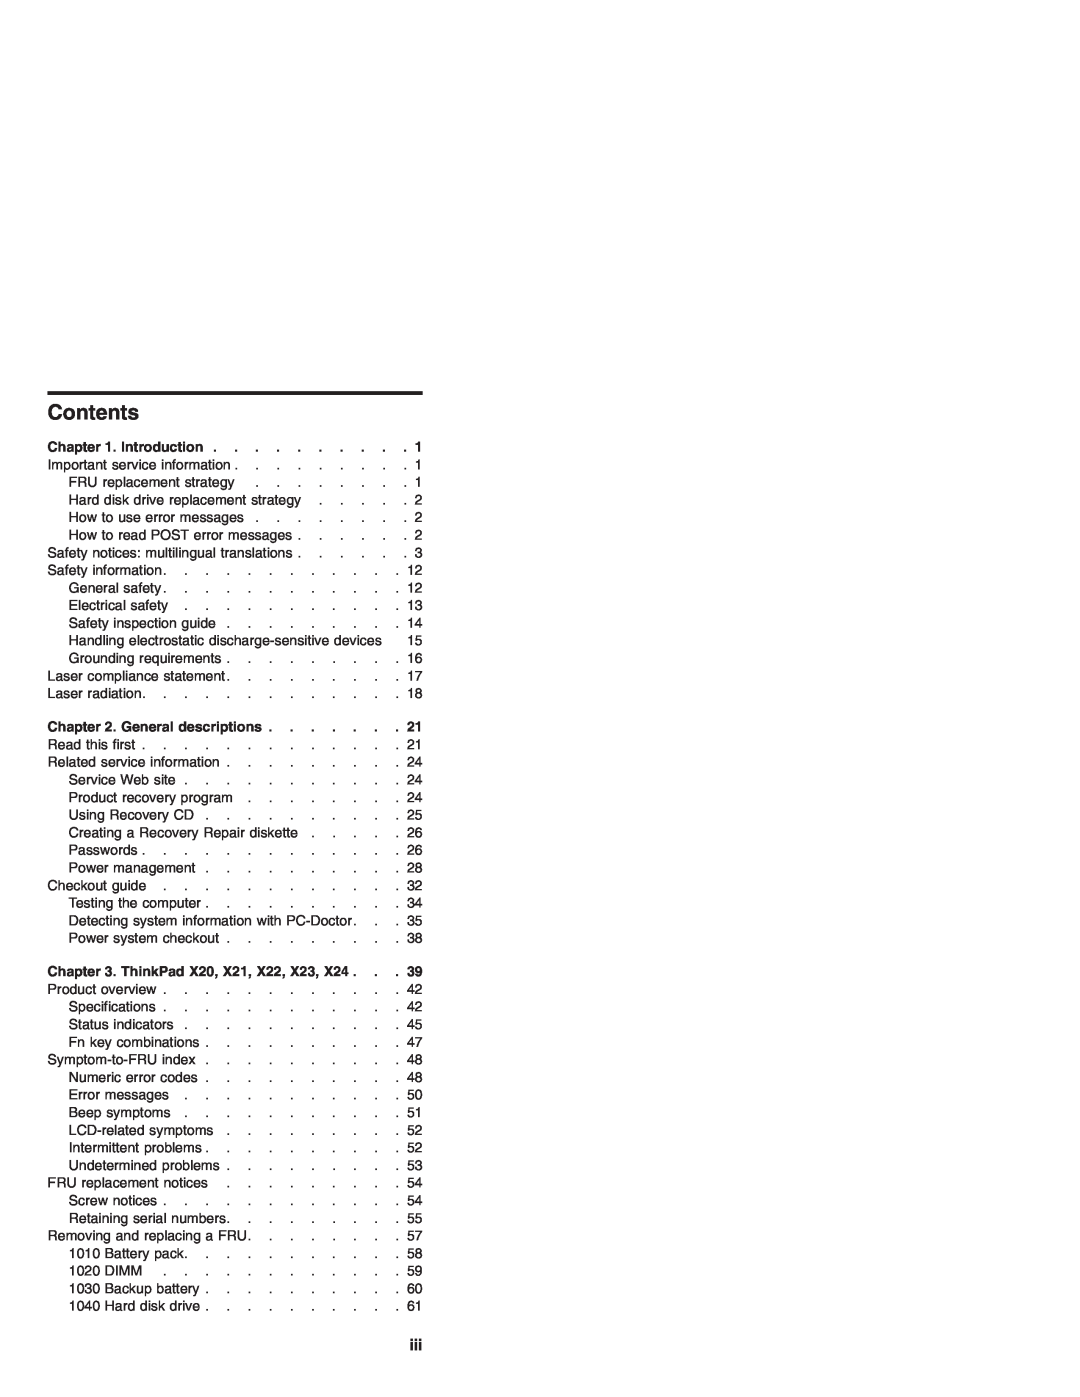 IBM X24 manual Contents, Introduction, General descriptions, ThinkPad X20, X21, X22, X23 